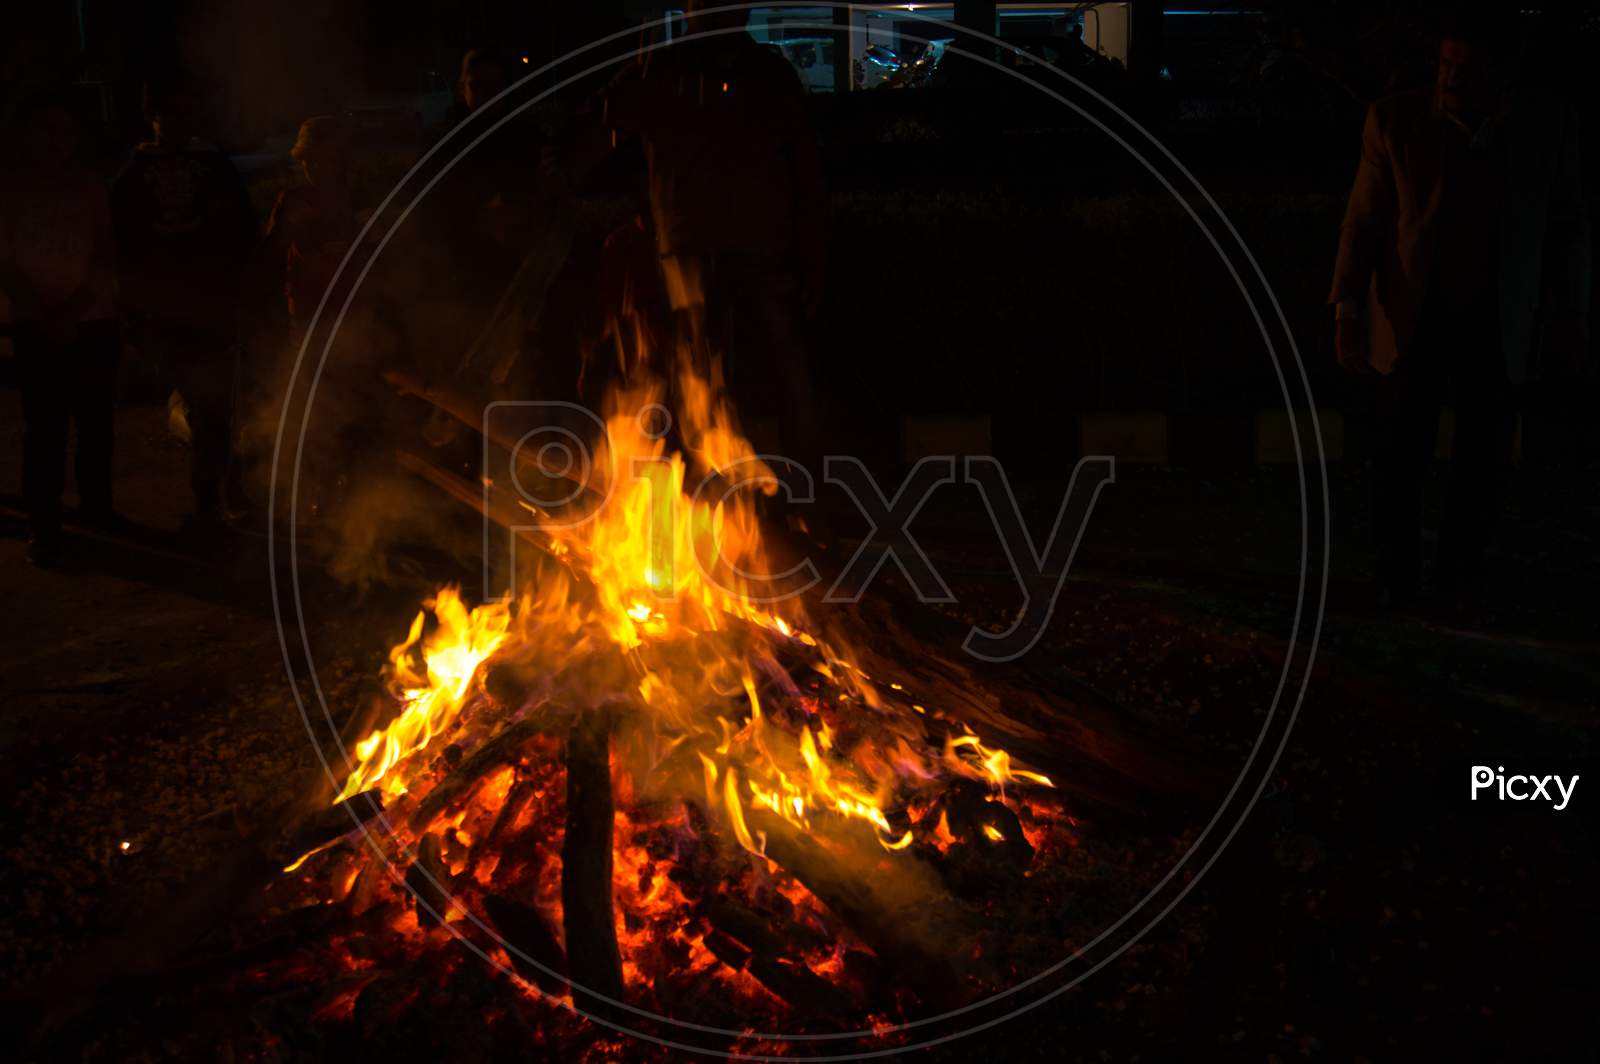 Giant Bon Fire Lit For The Festival Of Lohri